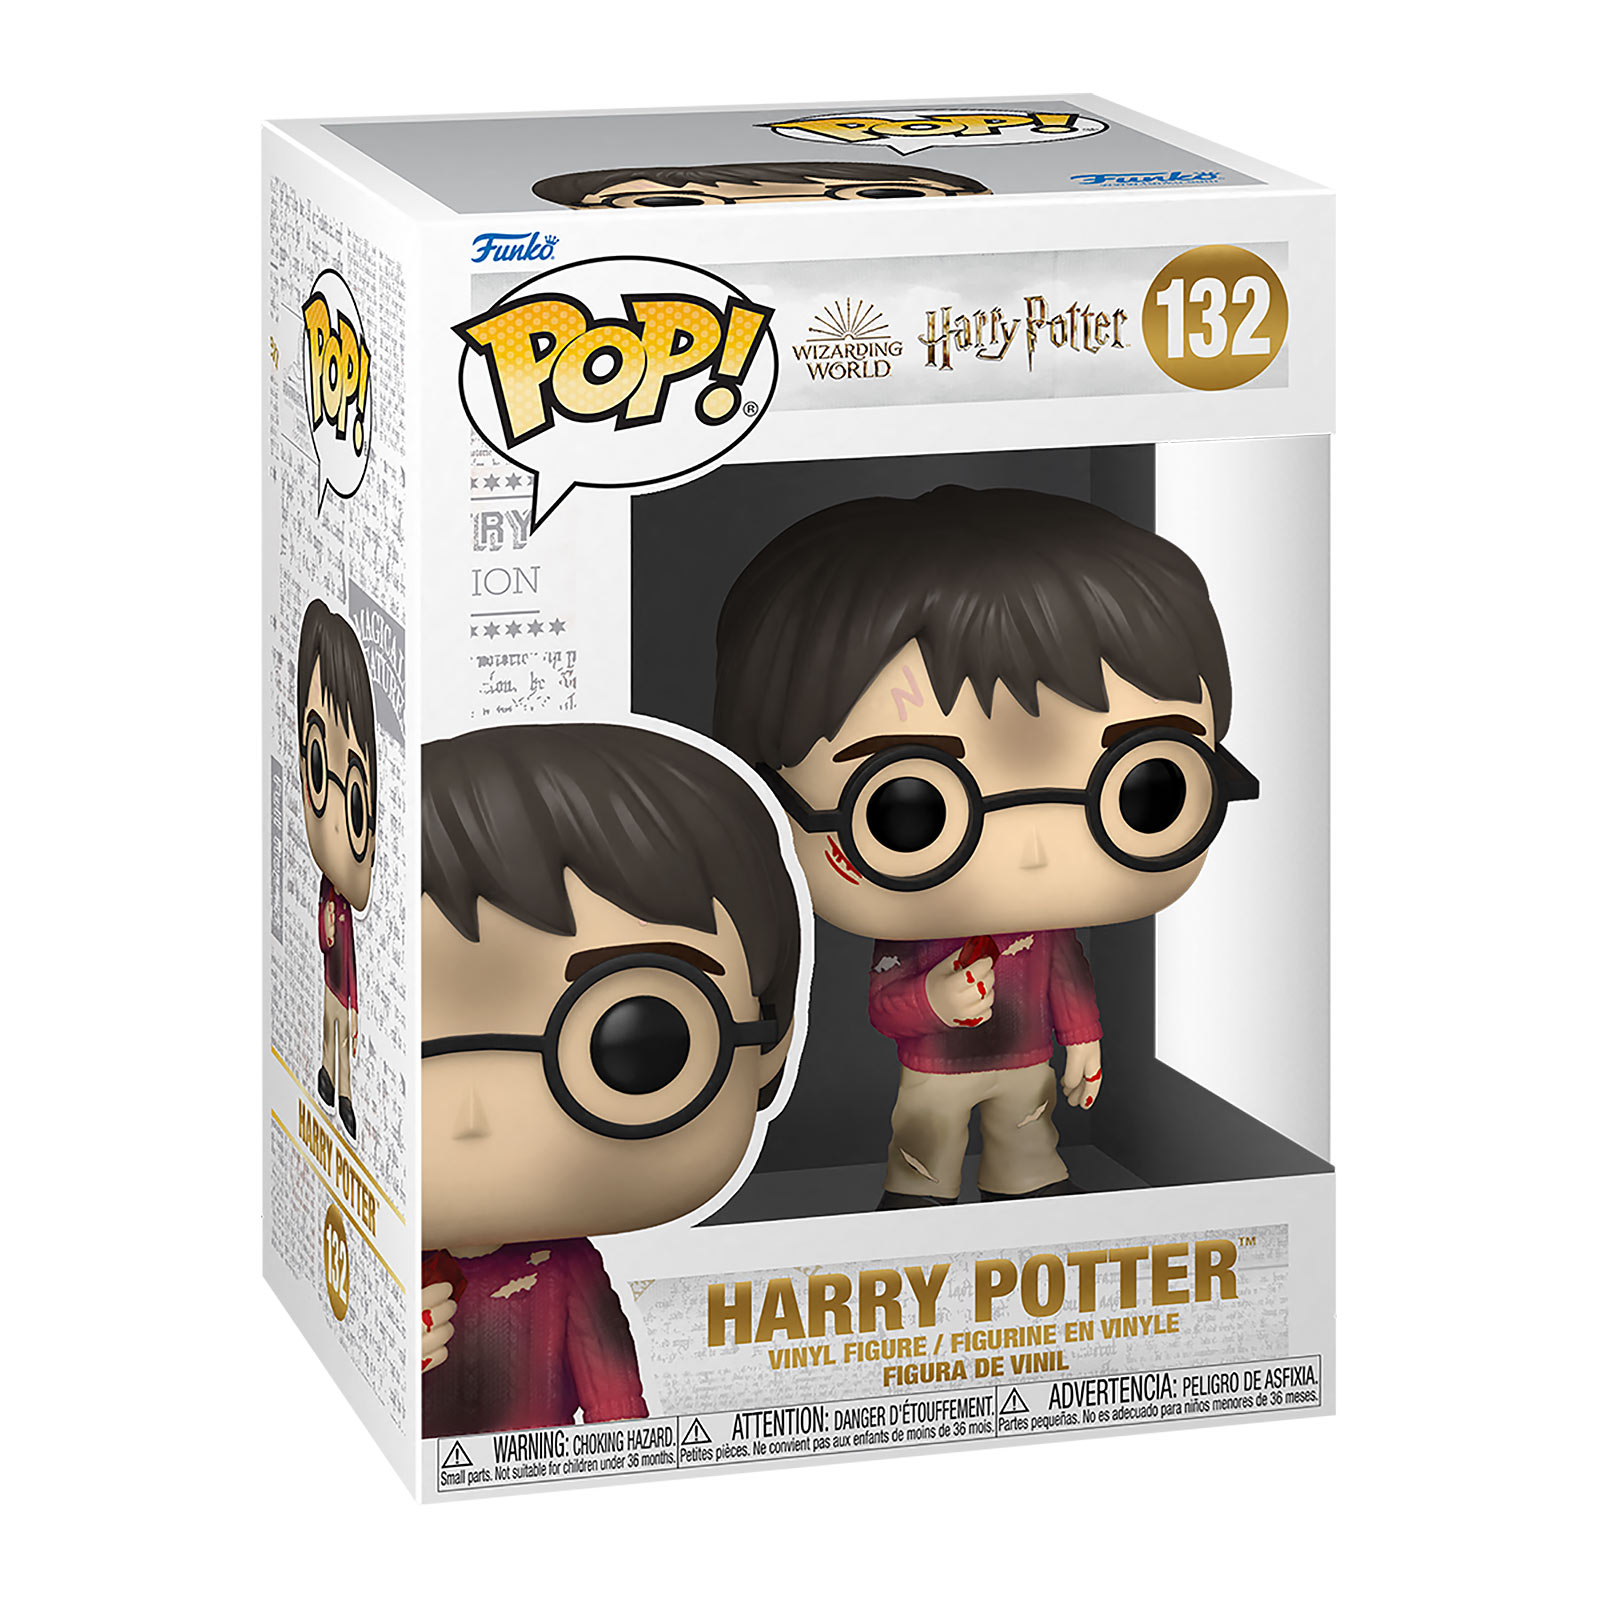 Harry Potter mit Stein der Weisen Funko Pop Figur